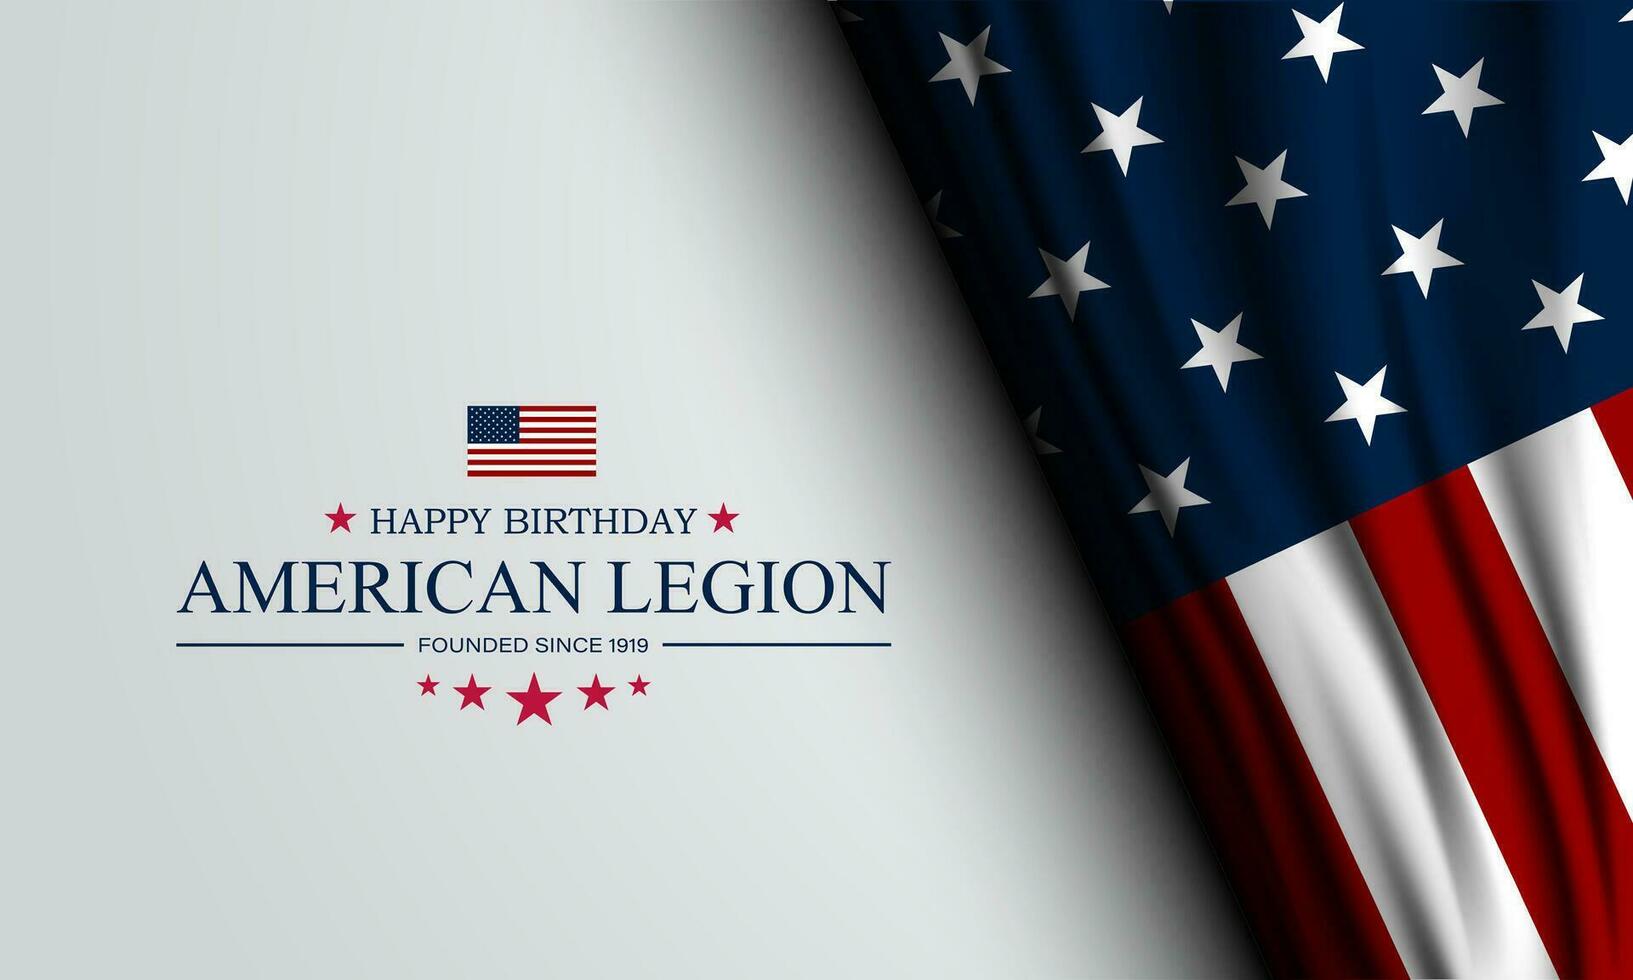 gelukkig verjaardag Amerikaans legioen achtergrond vector illustratie